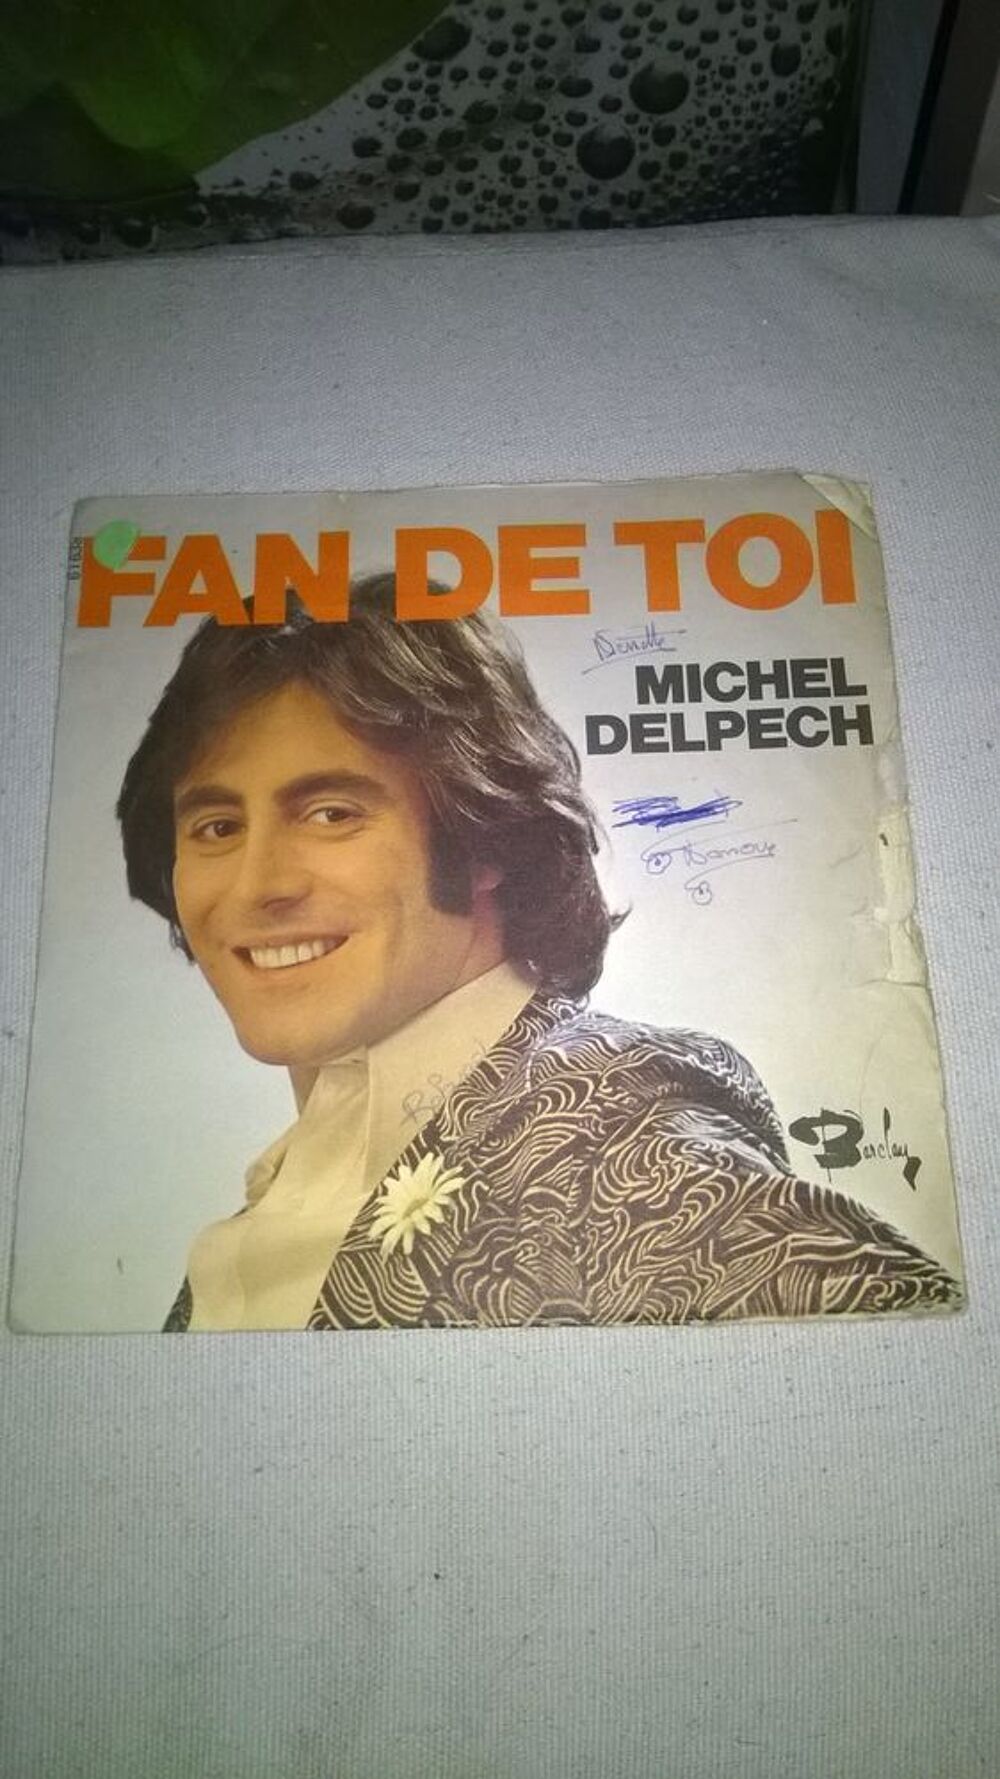 Vinyle 45 T Michel Delpech 
Fan De Toi 
1972
Bon etat
F CD et vinyles